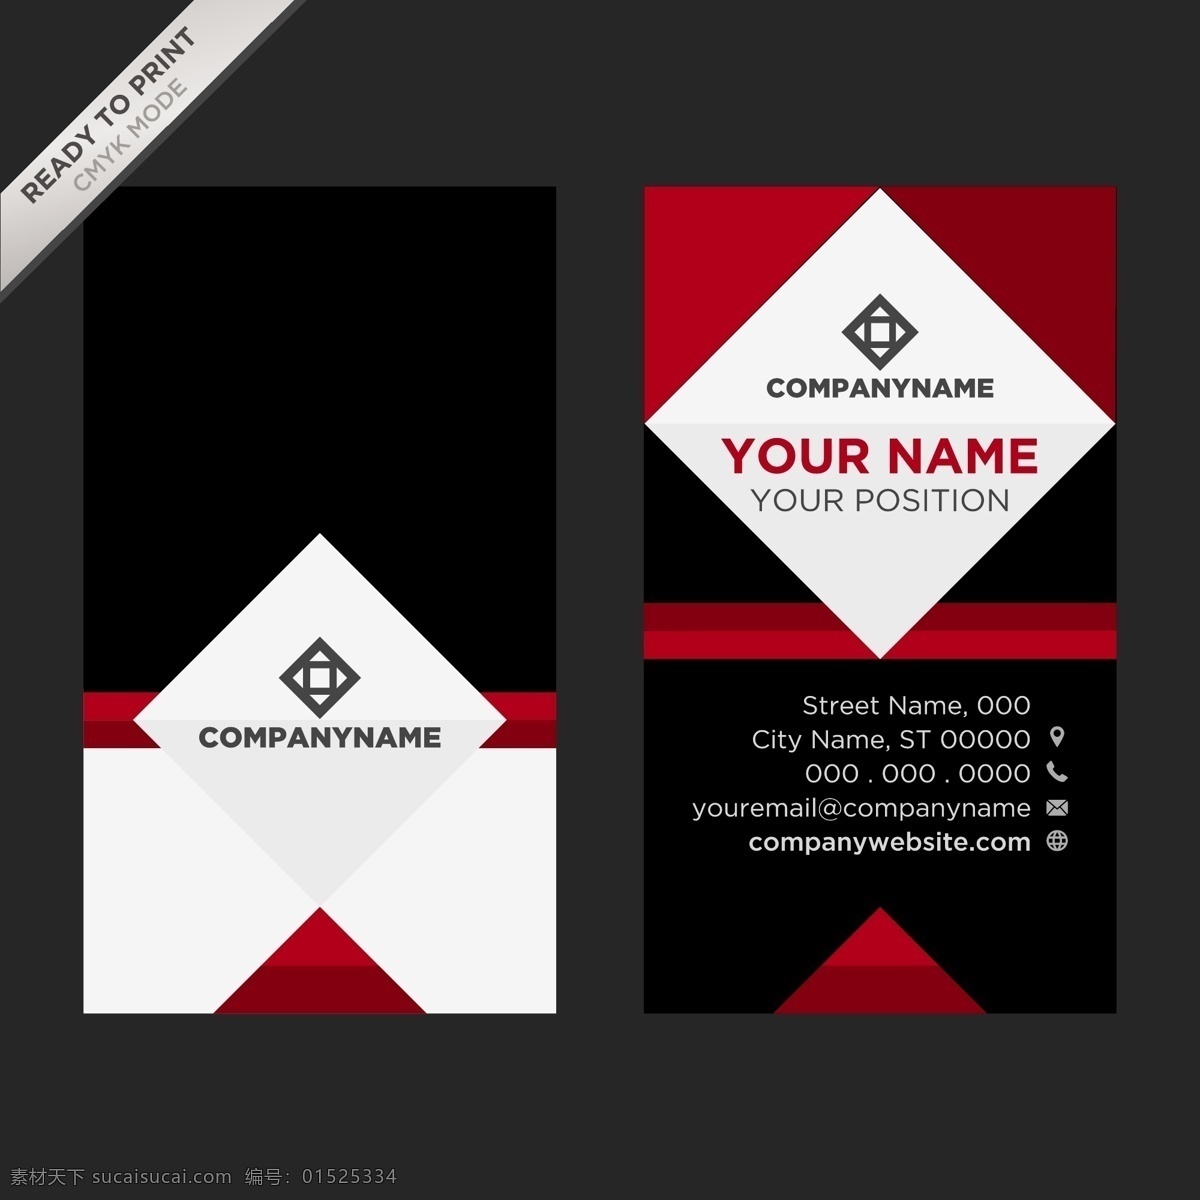 彩色名片设计 标志 名片 商务 抽象 办公 模板 颜色 演示 企业 公司 抽象标志 现代 文具 企业身份 身份 身份证 商务标志